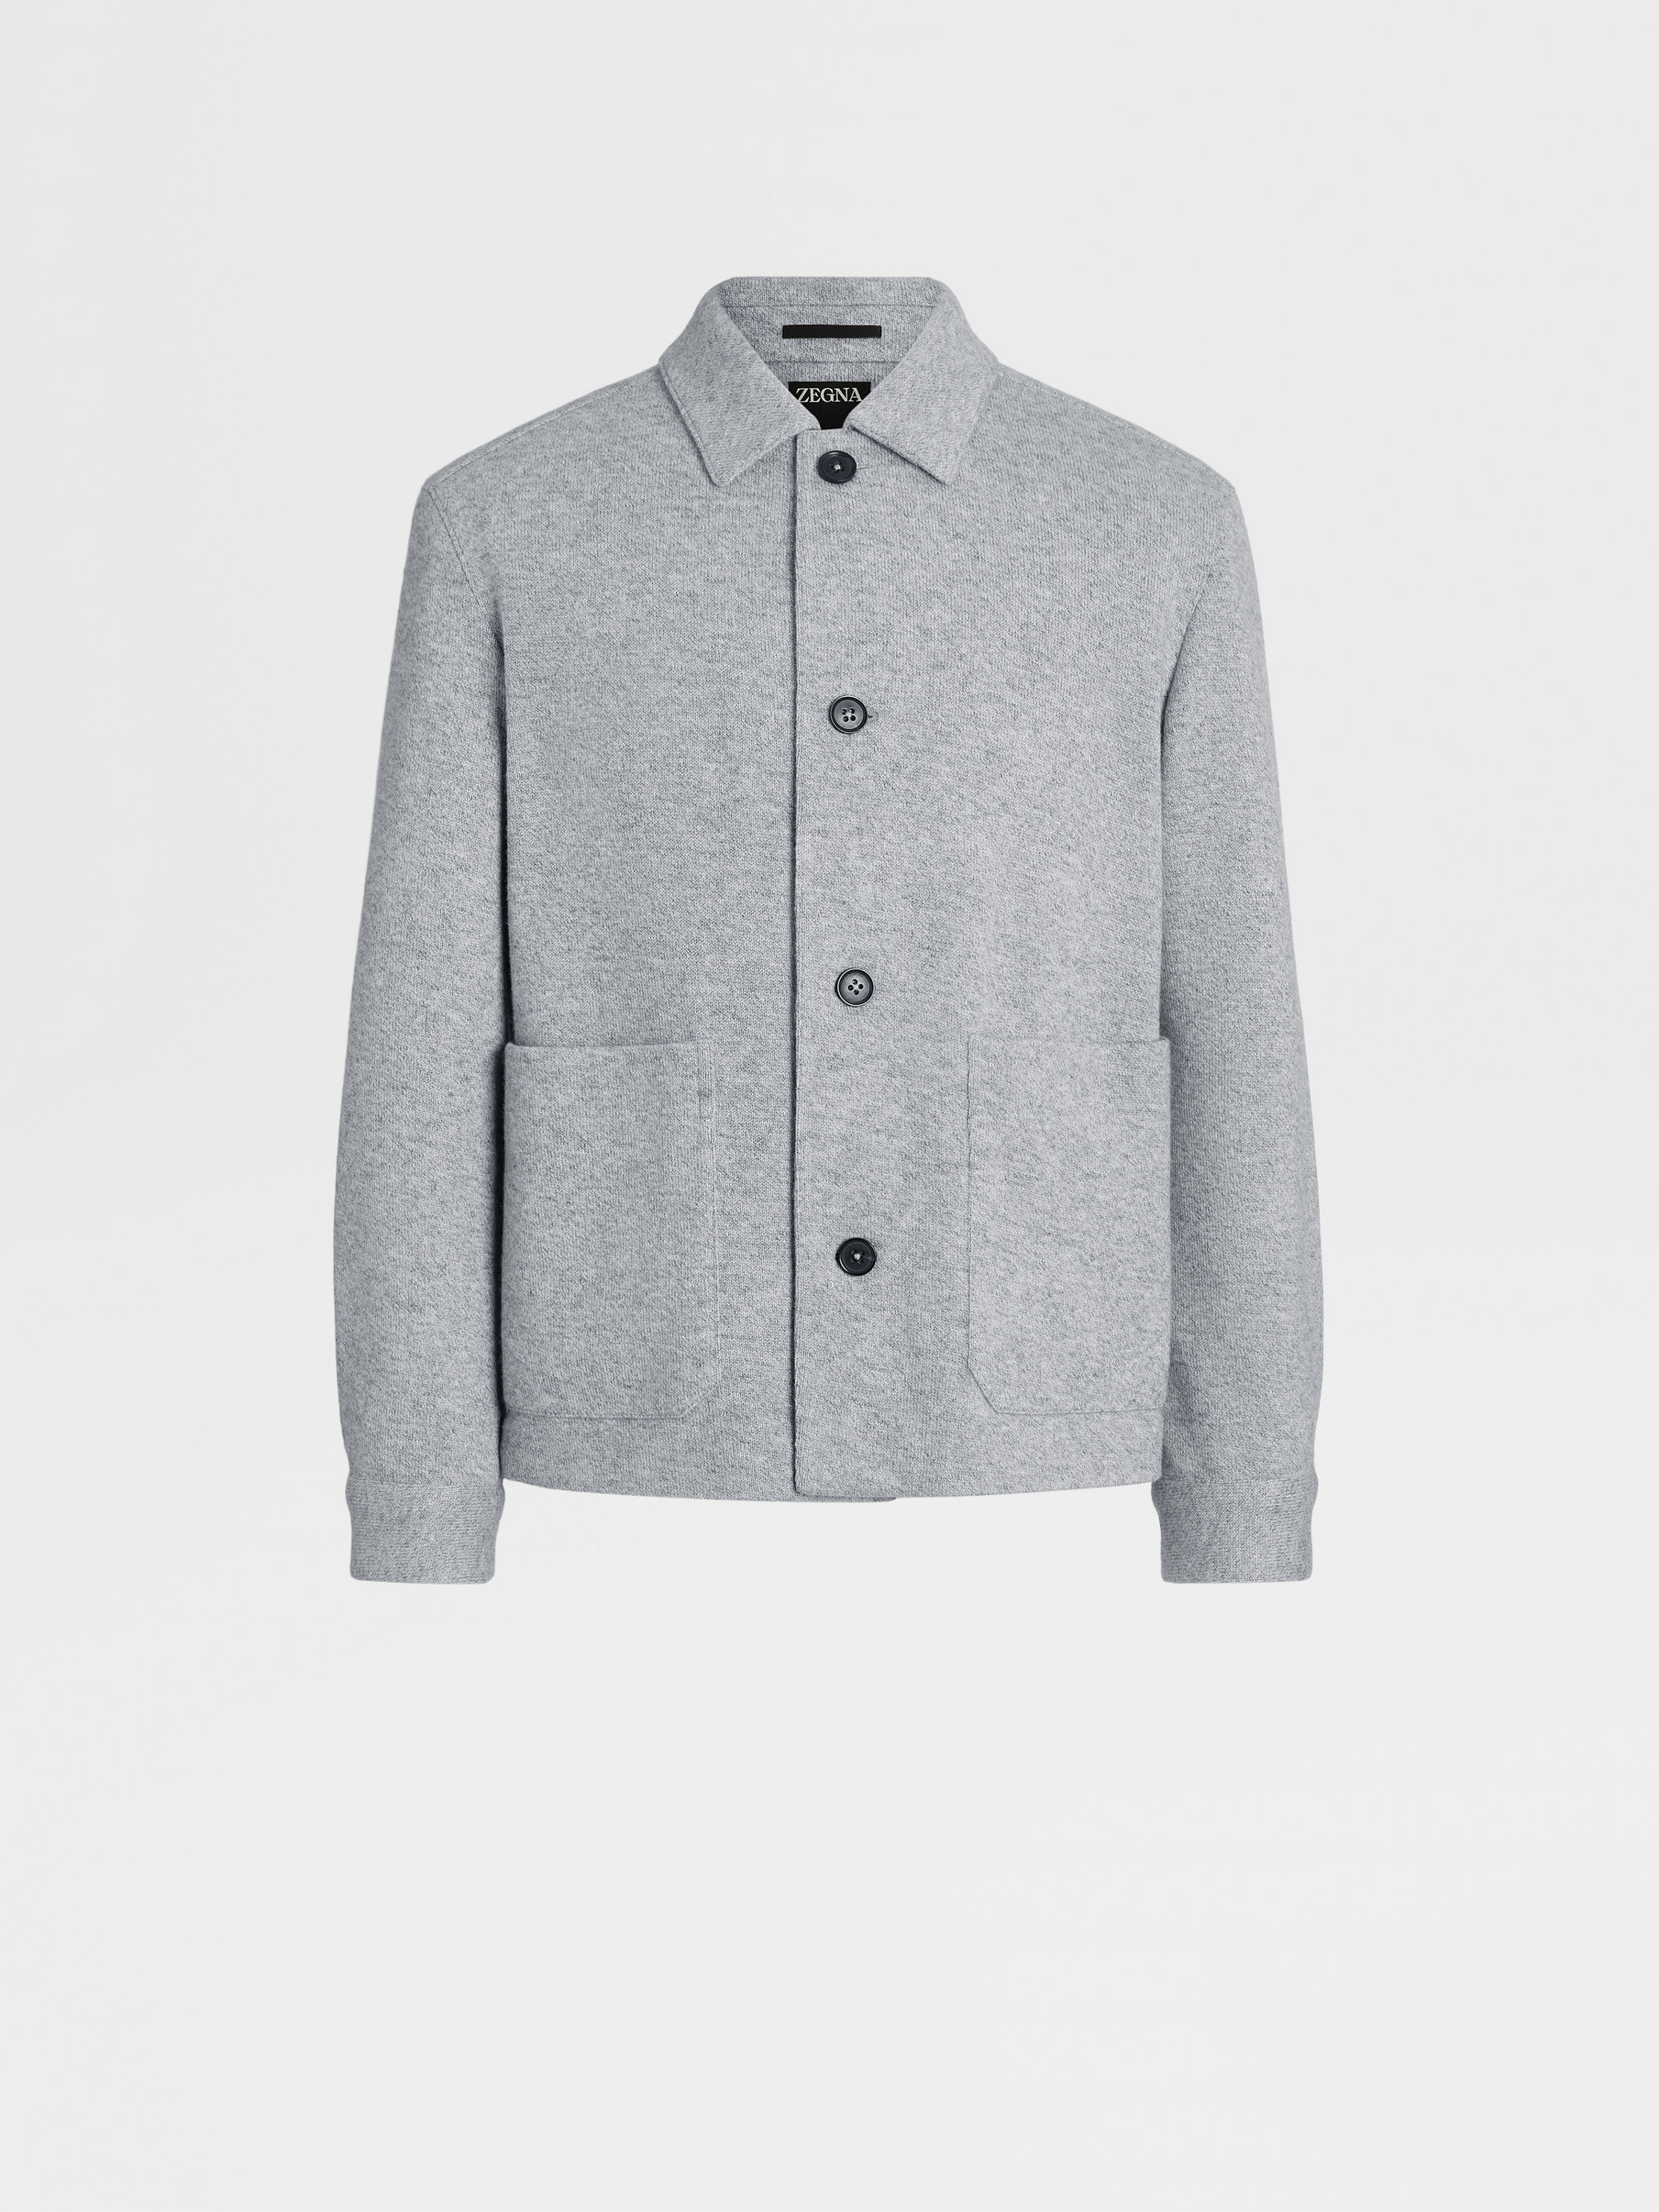 Grey Oasi Cashmere Chore Jacket FW23 28553474 | Zegna US